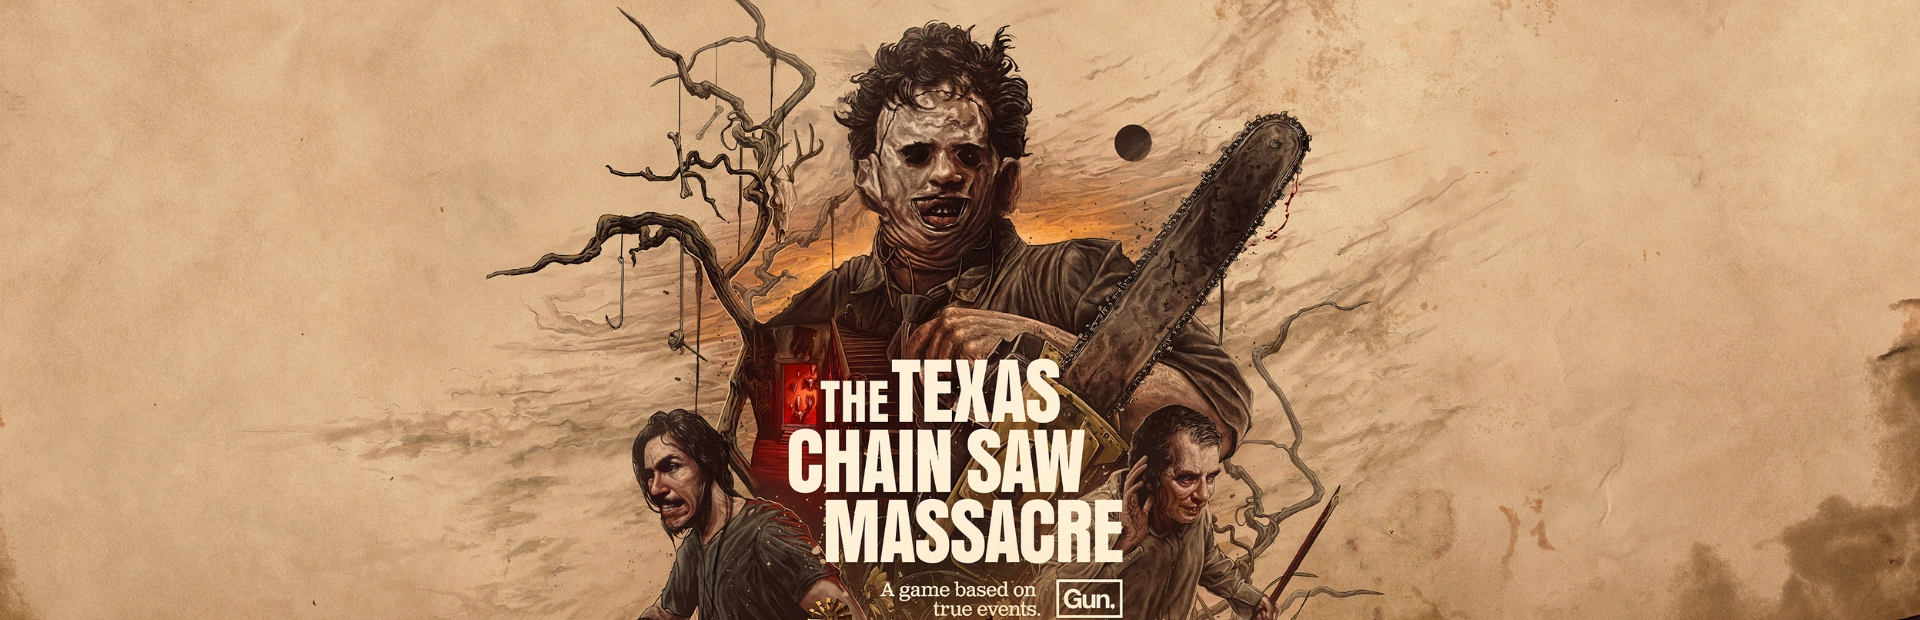 دانلود بازی The Texas Chain Saw Massacre برای کامپیوتر | گیمباتو